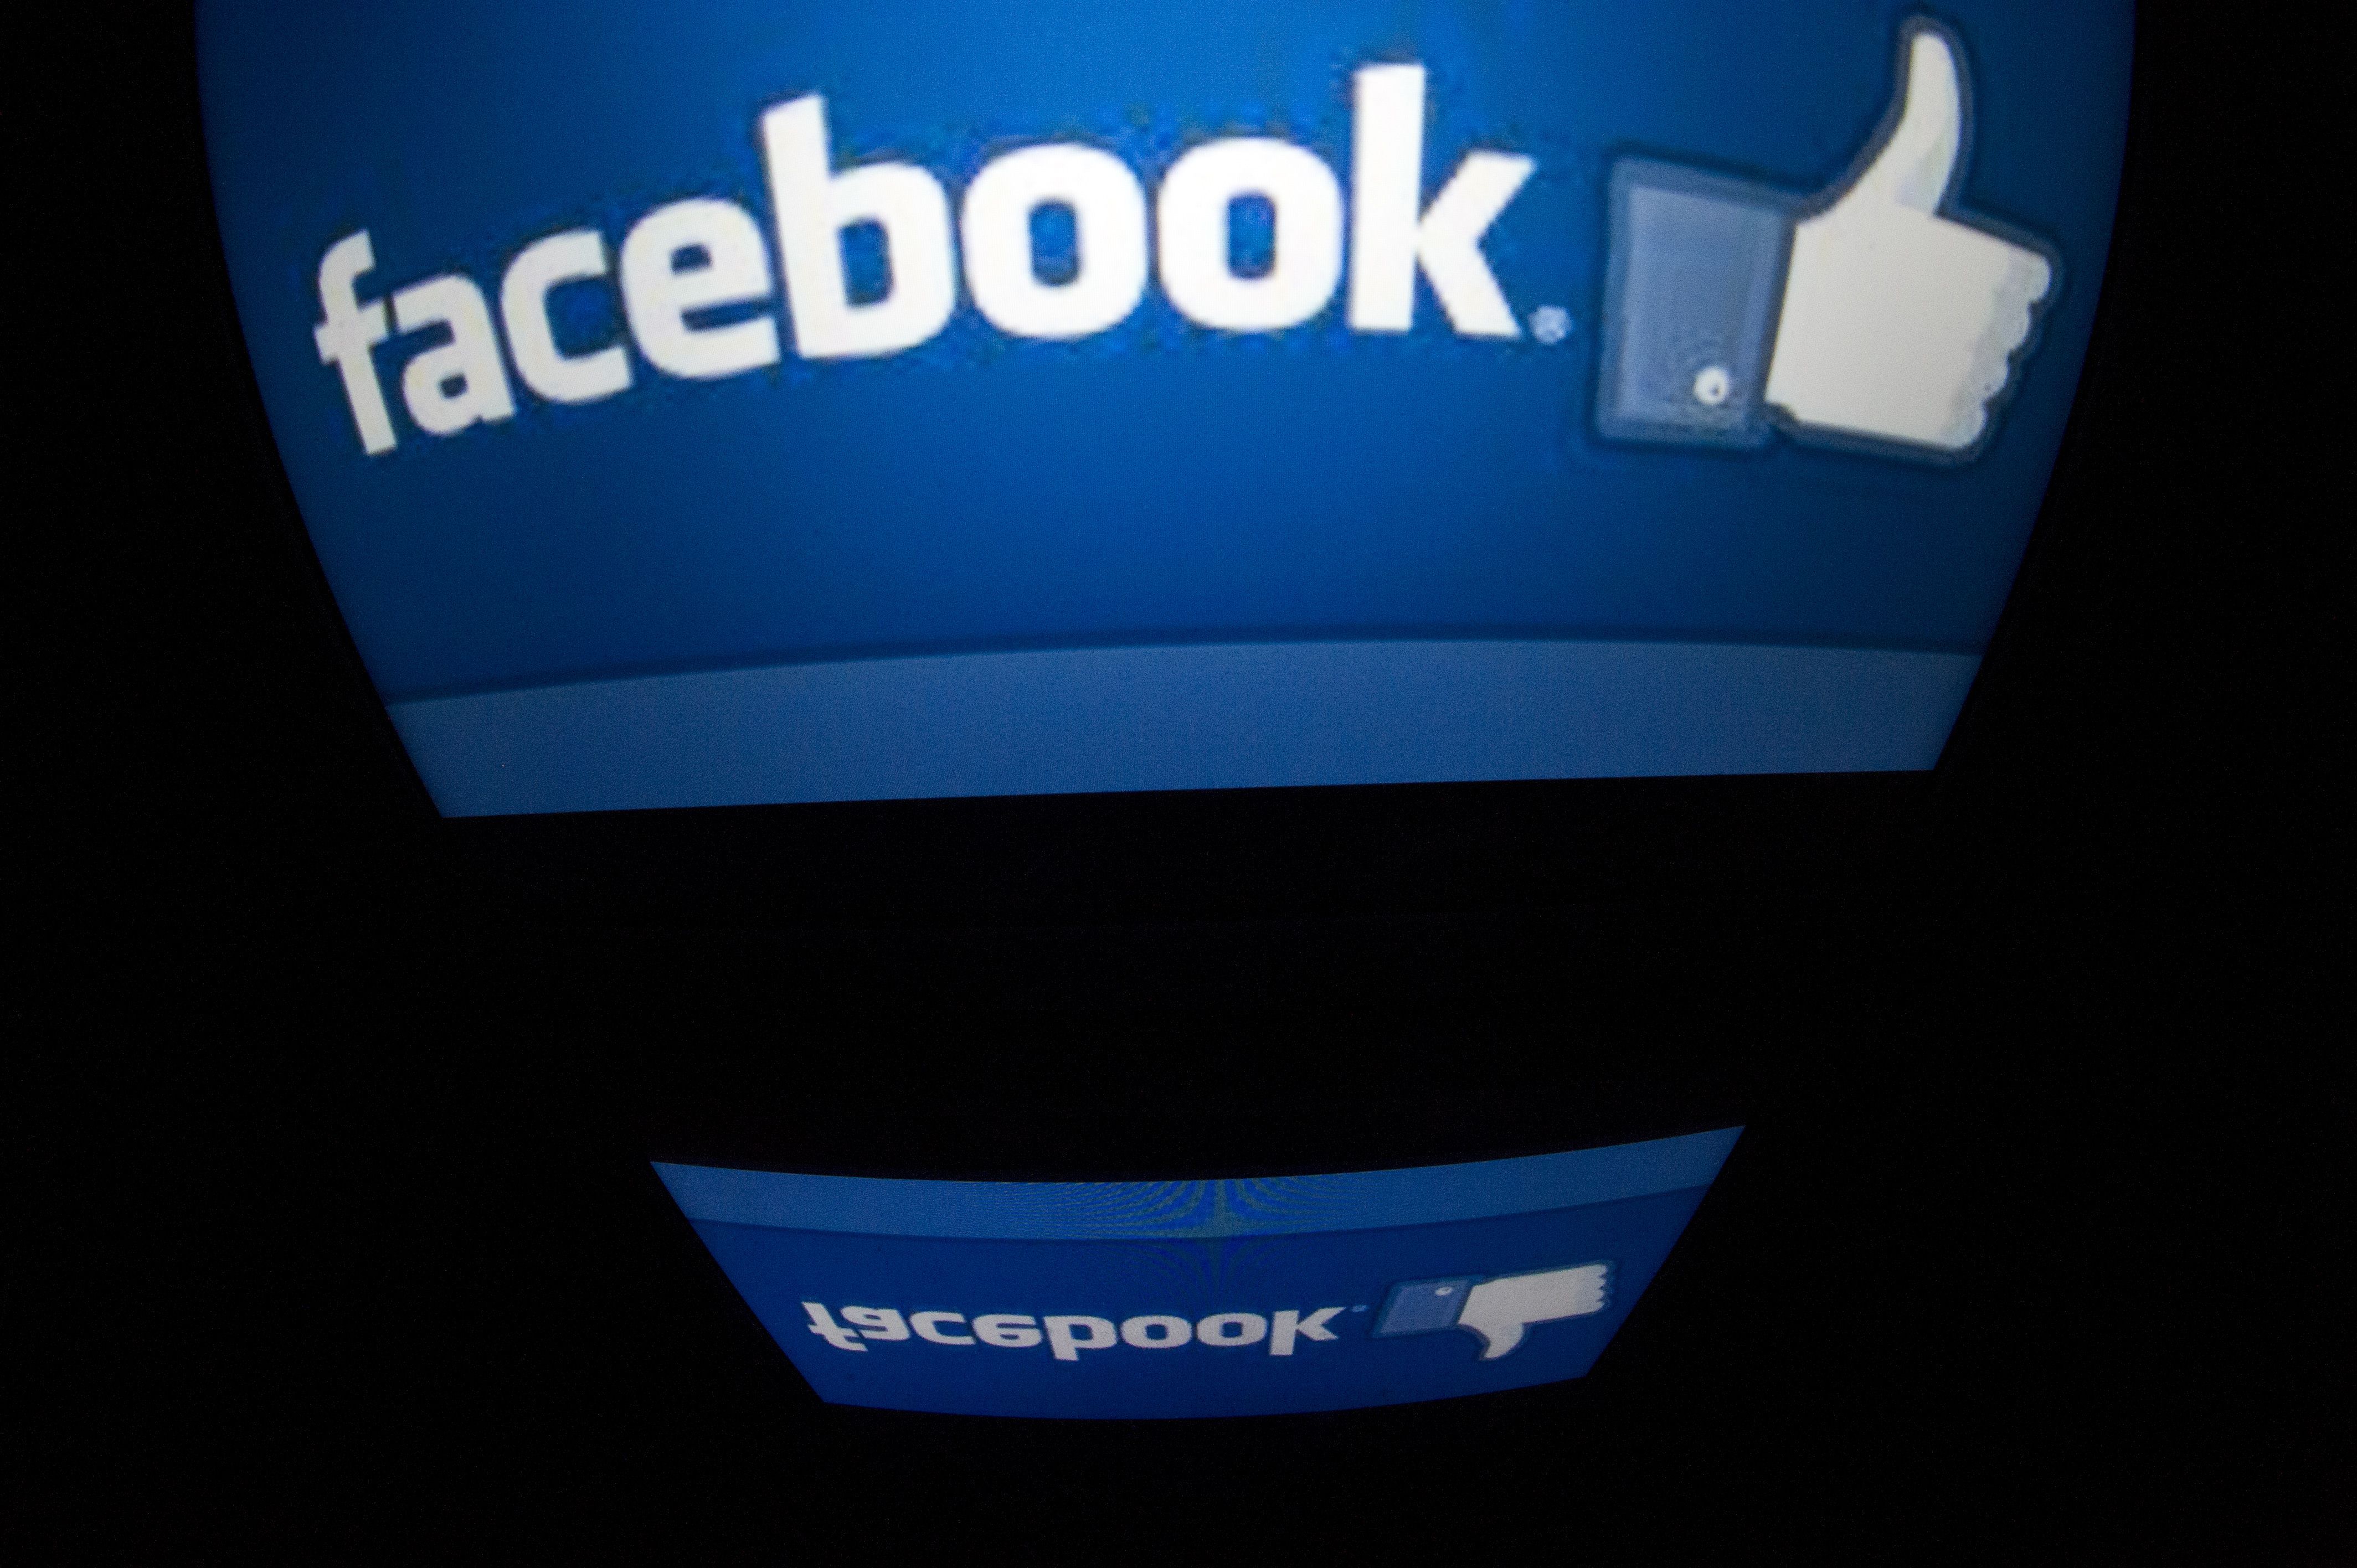 Facebook a lansat o aplicaţie care le permite utilizatorilor să comunice sub anonimat